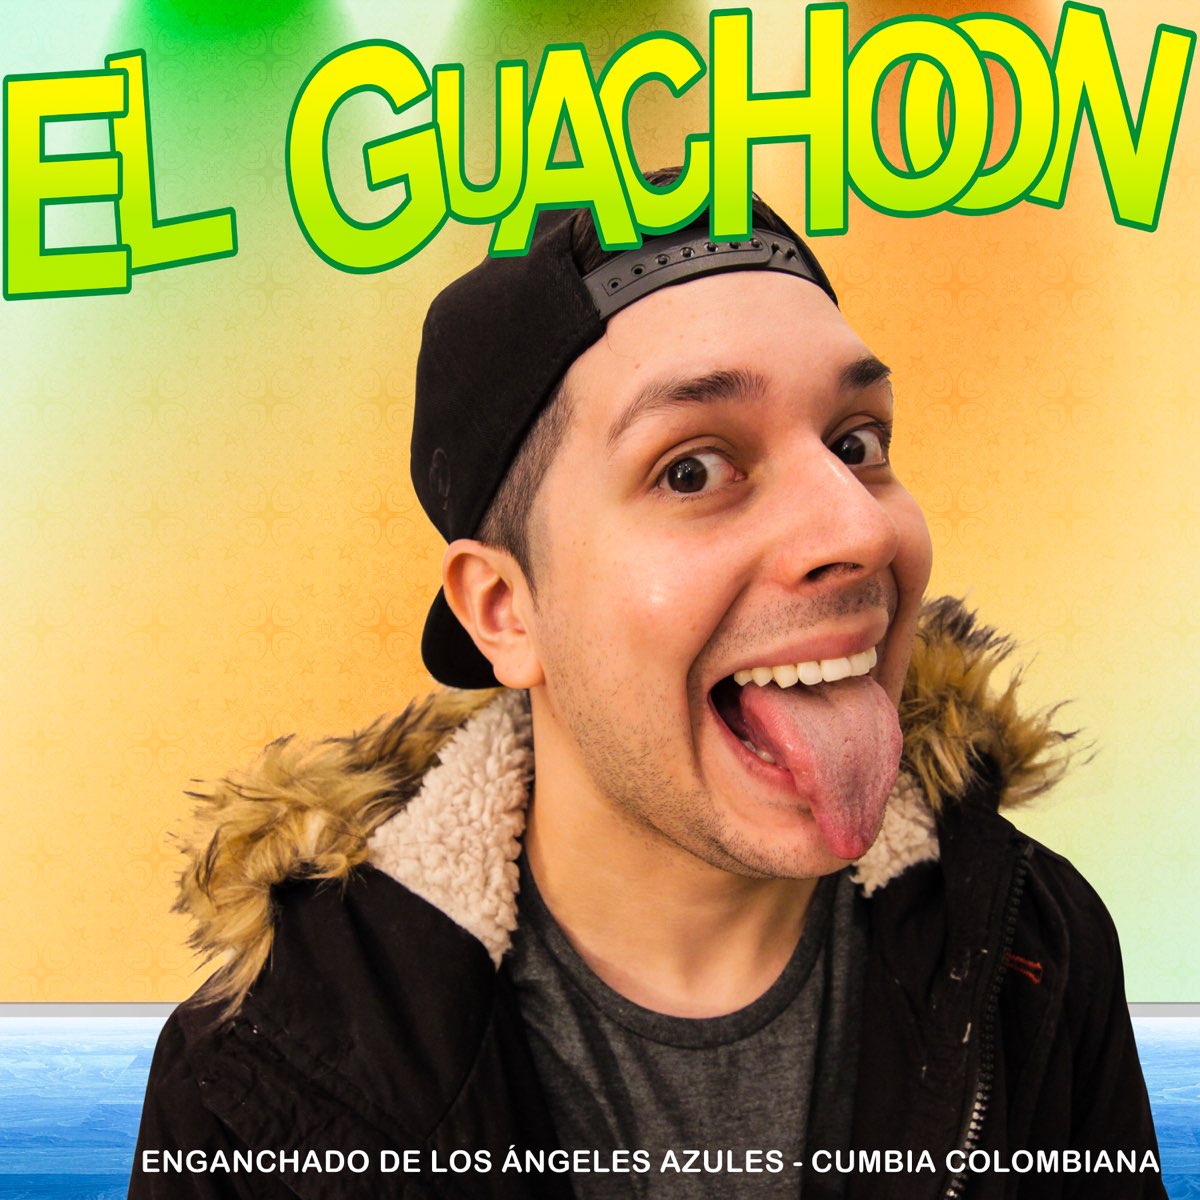 Enganchado Los Ángeles Azules / Cumbia Colombiana - Single de El Guachoon  en Apple Music